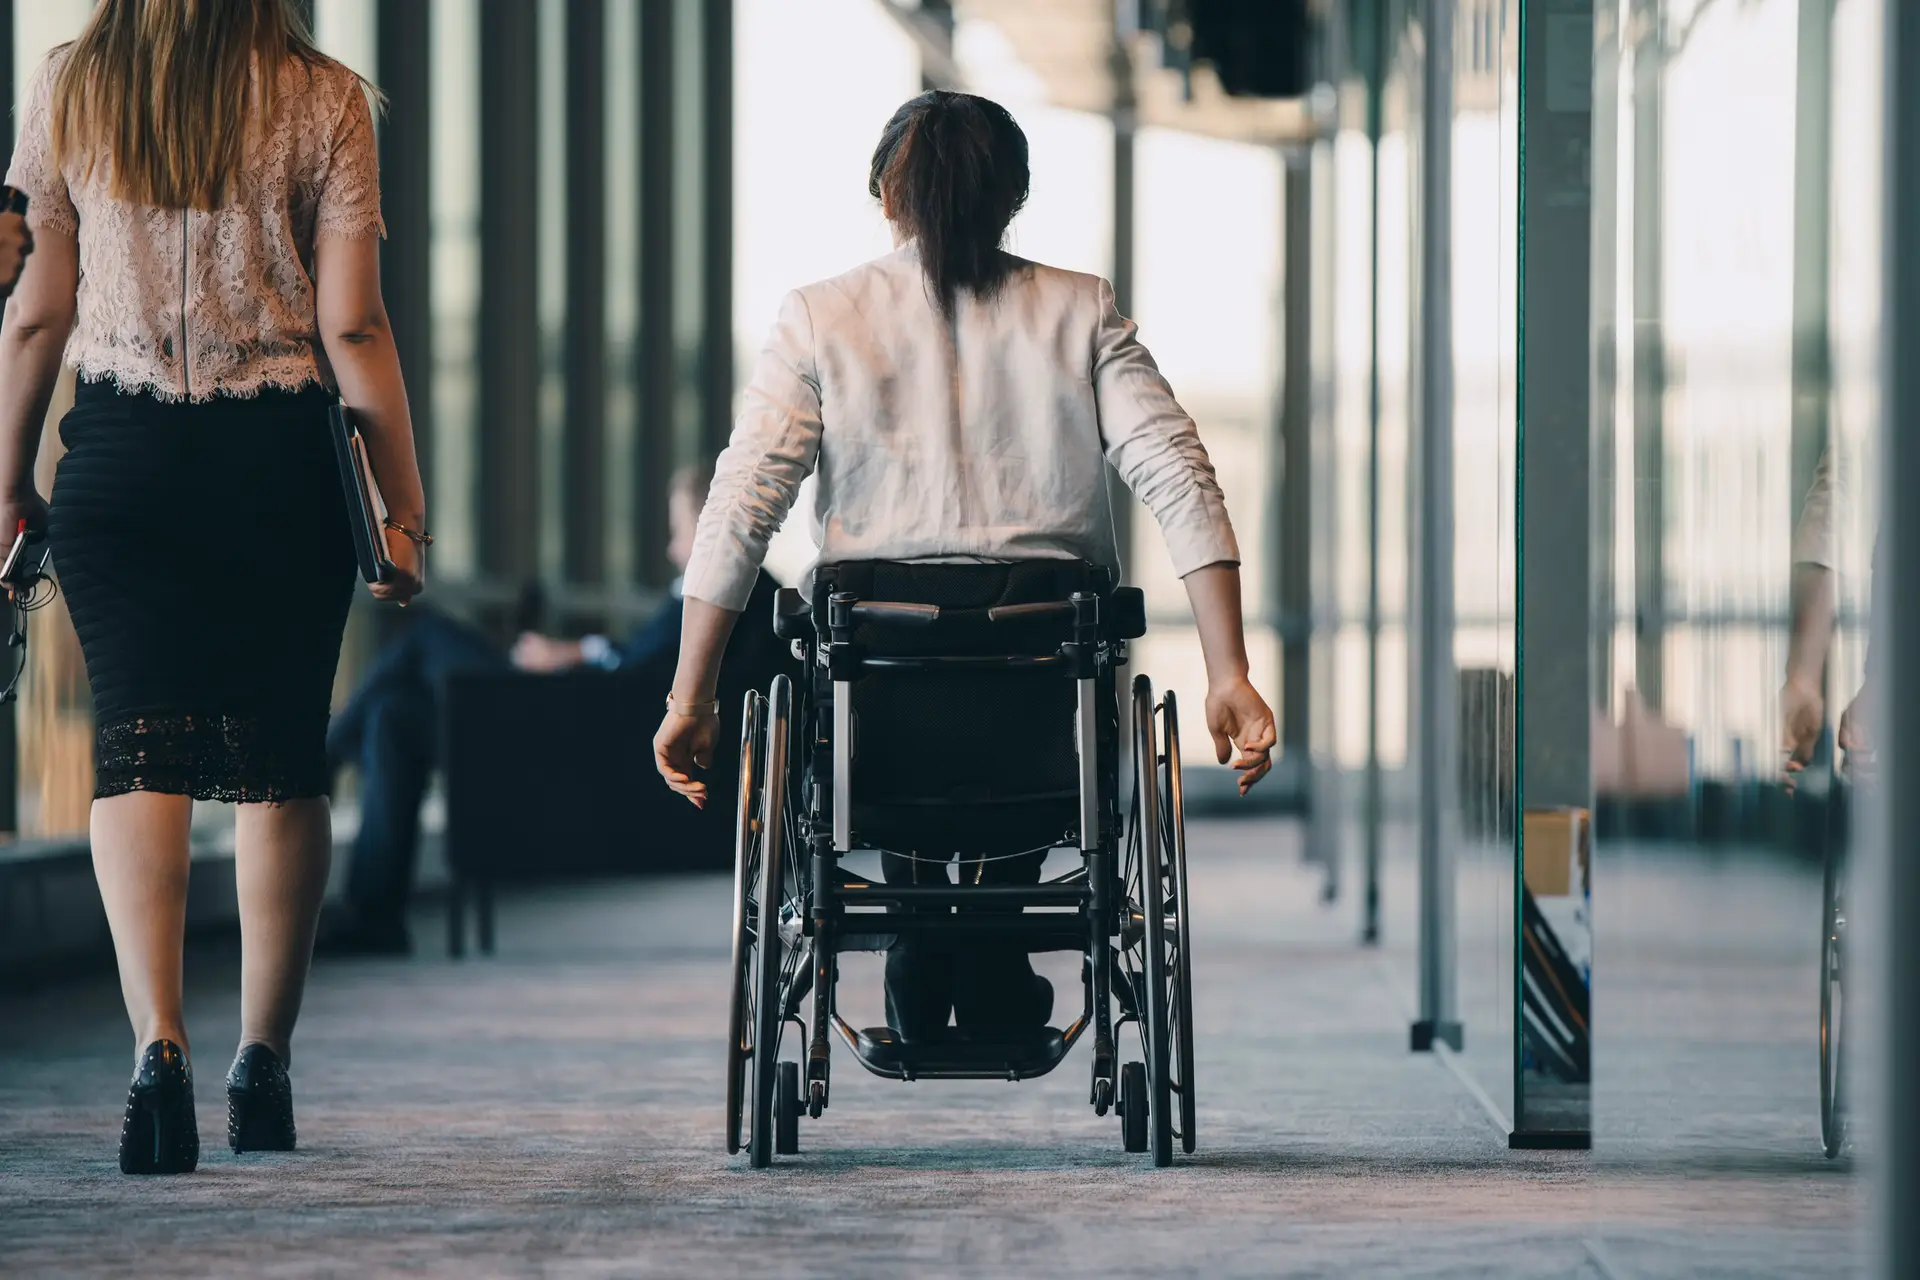 Pessoas com deficiência com maior risco de pobreza e exclusão ou discriminações